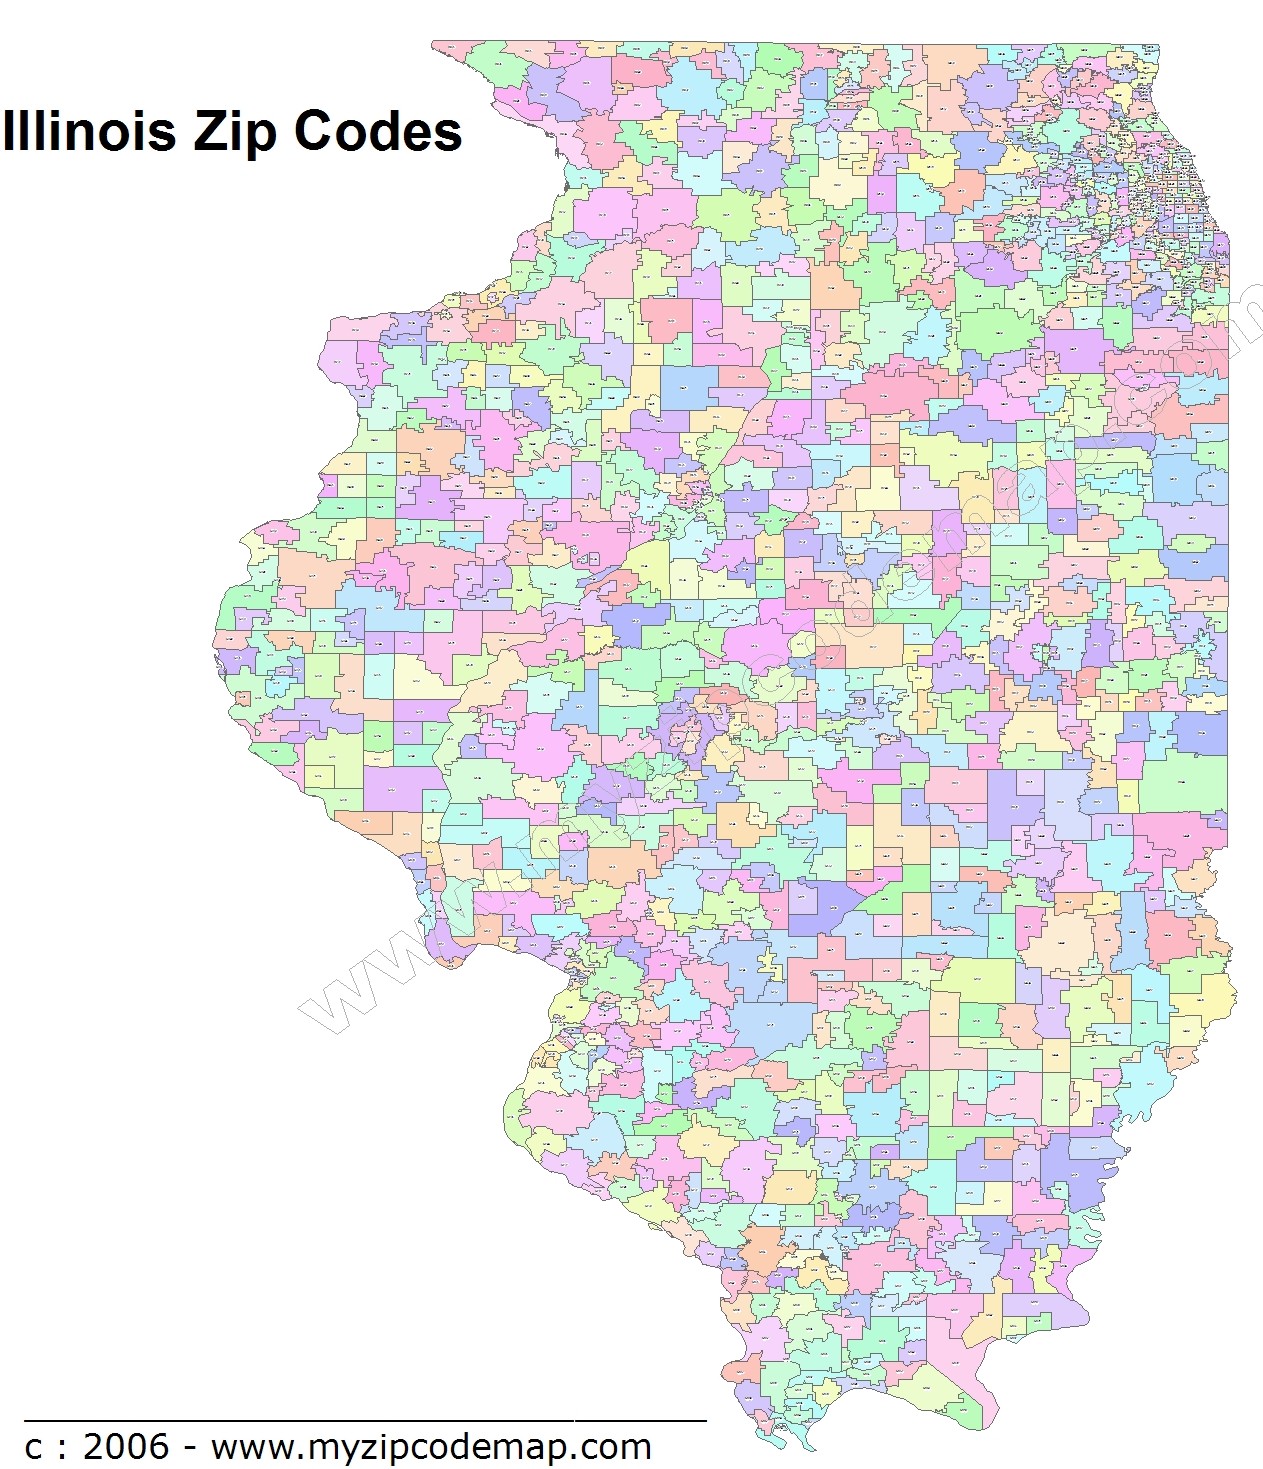 Illinois Zip Code Maps Free Illinois Zip Code Maps